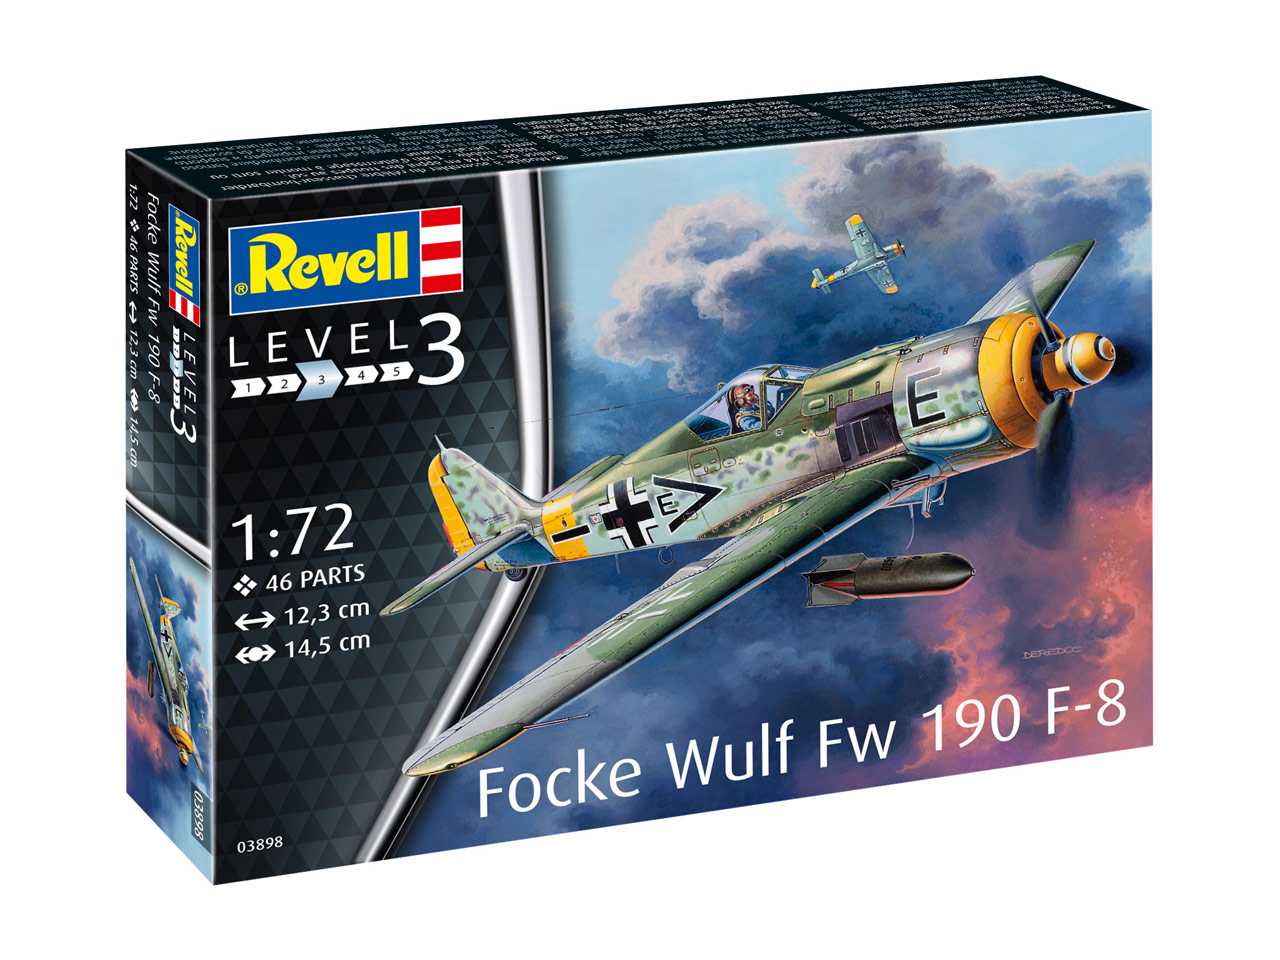 Fotografie Plastic ModelKit letadlo 03898 - Focke Wulf Fw190 F-8 (1:72)